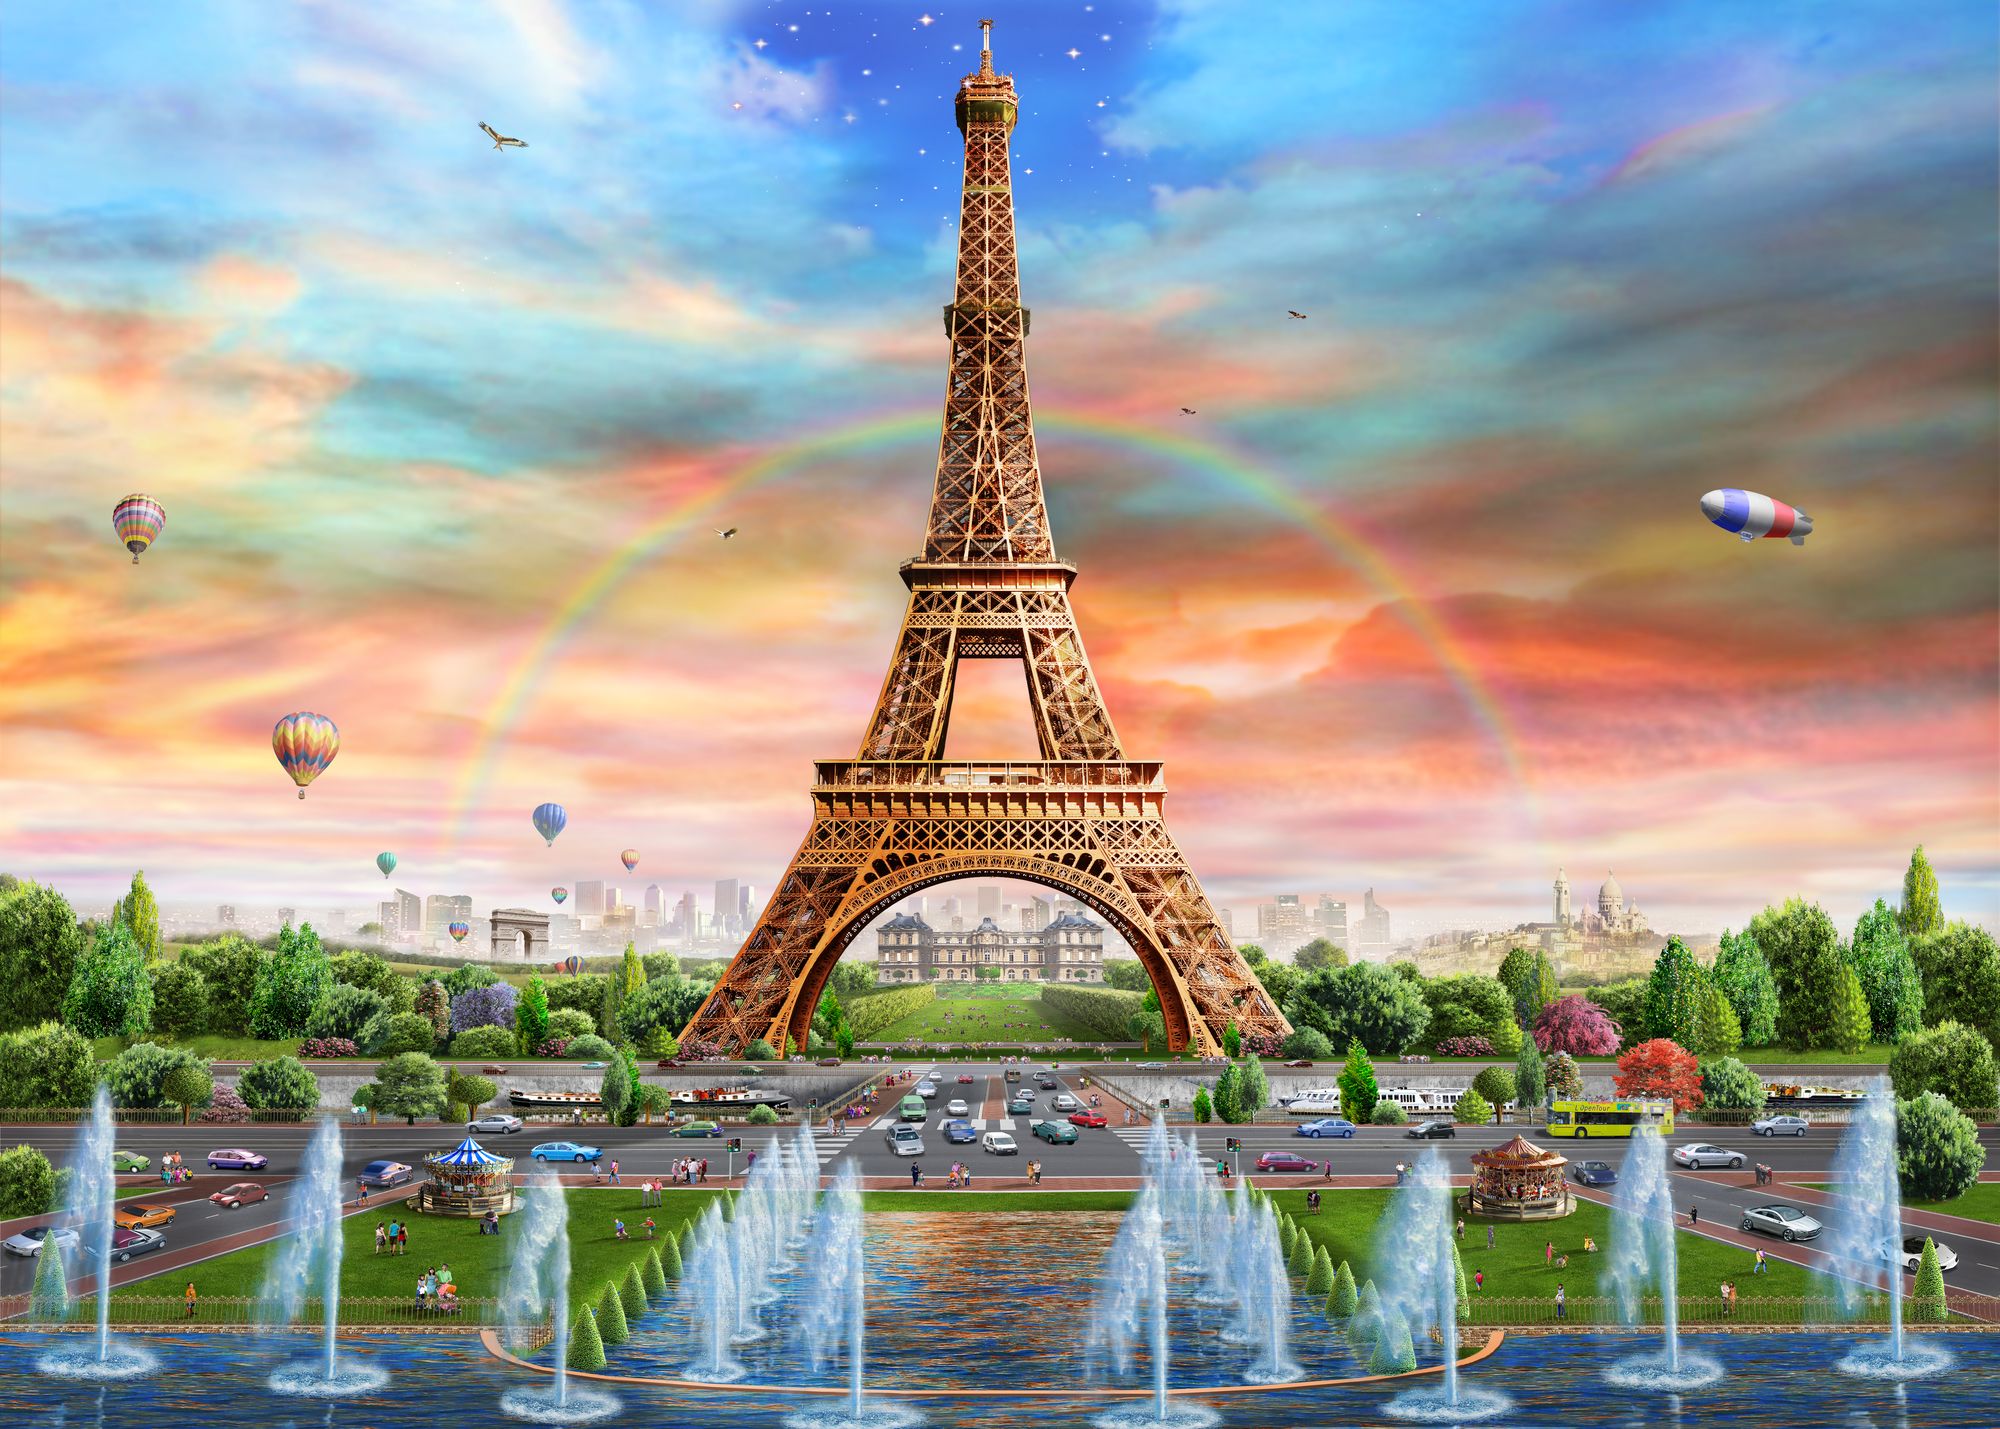 Fondos de pantalla de la torre Eiffel - FondosMil